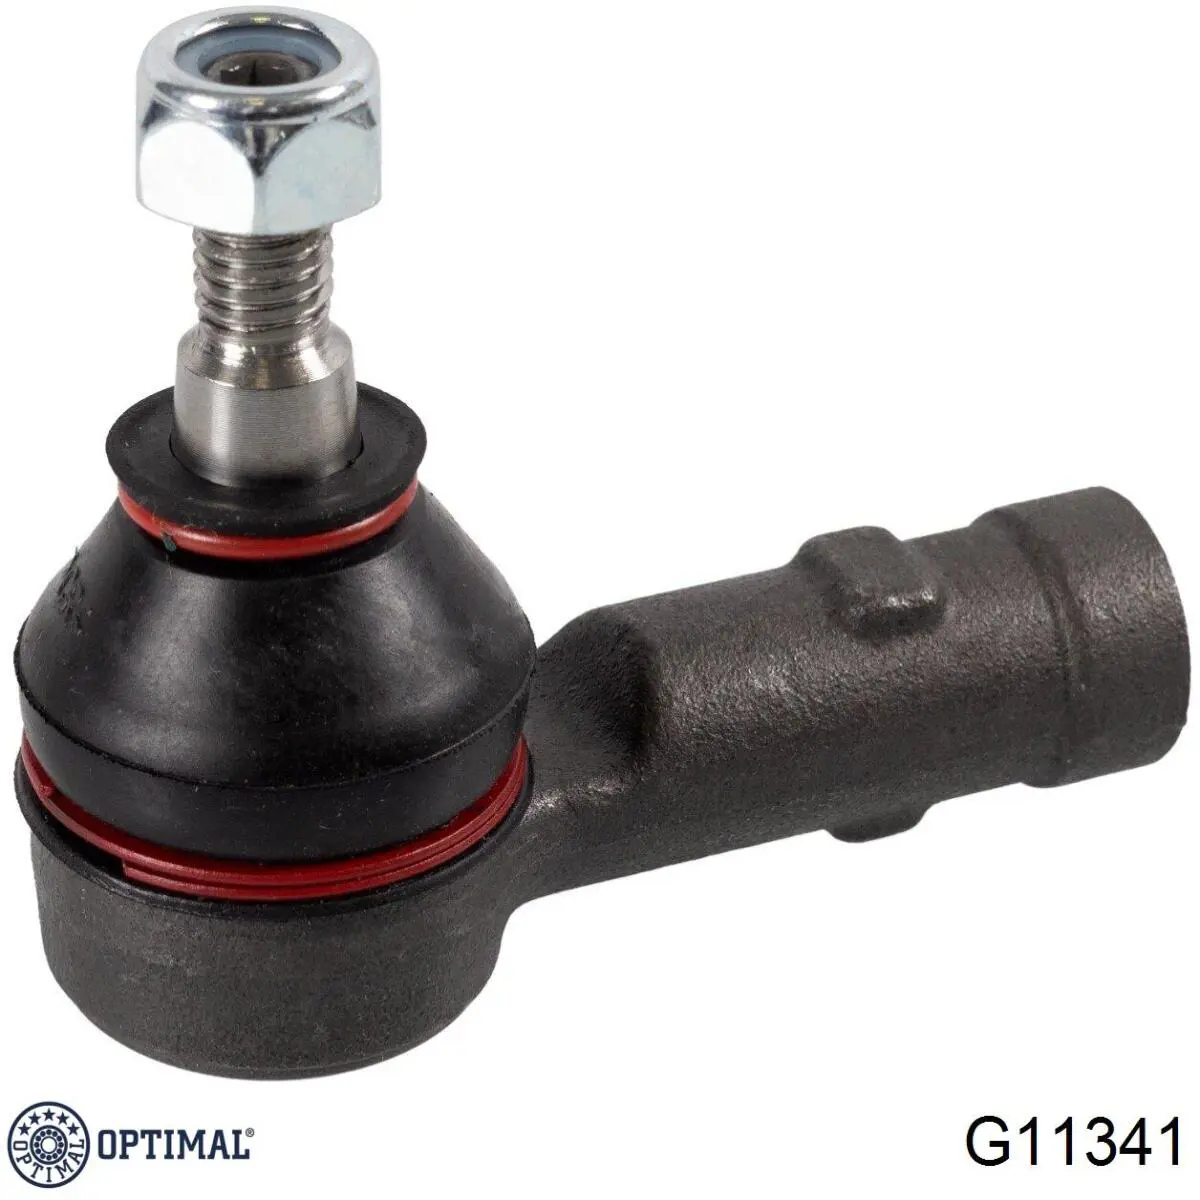 G11341 Optimal rótula barra de acoplamiento exterior